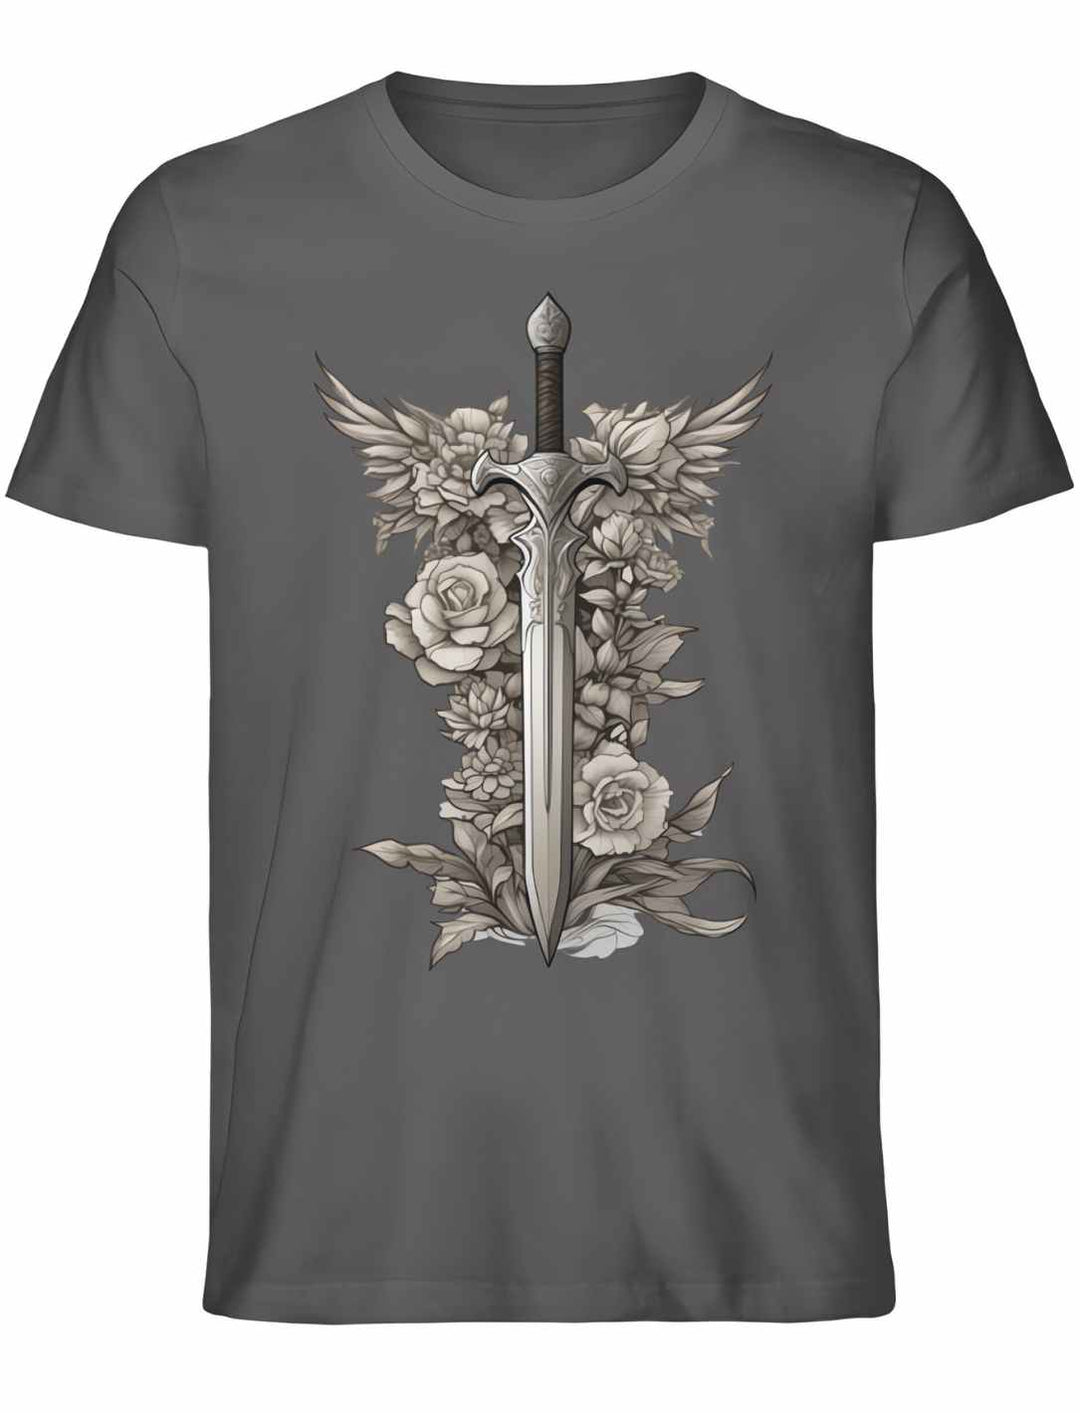 Schwert des Sylvanritters T-Shirt in Anthrazit aus Bio-Baumwolle, Unisex-Modell, mit kontrastreichem Mythos-Design